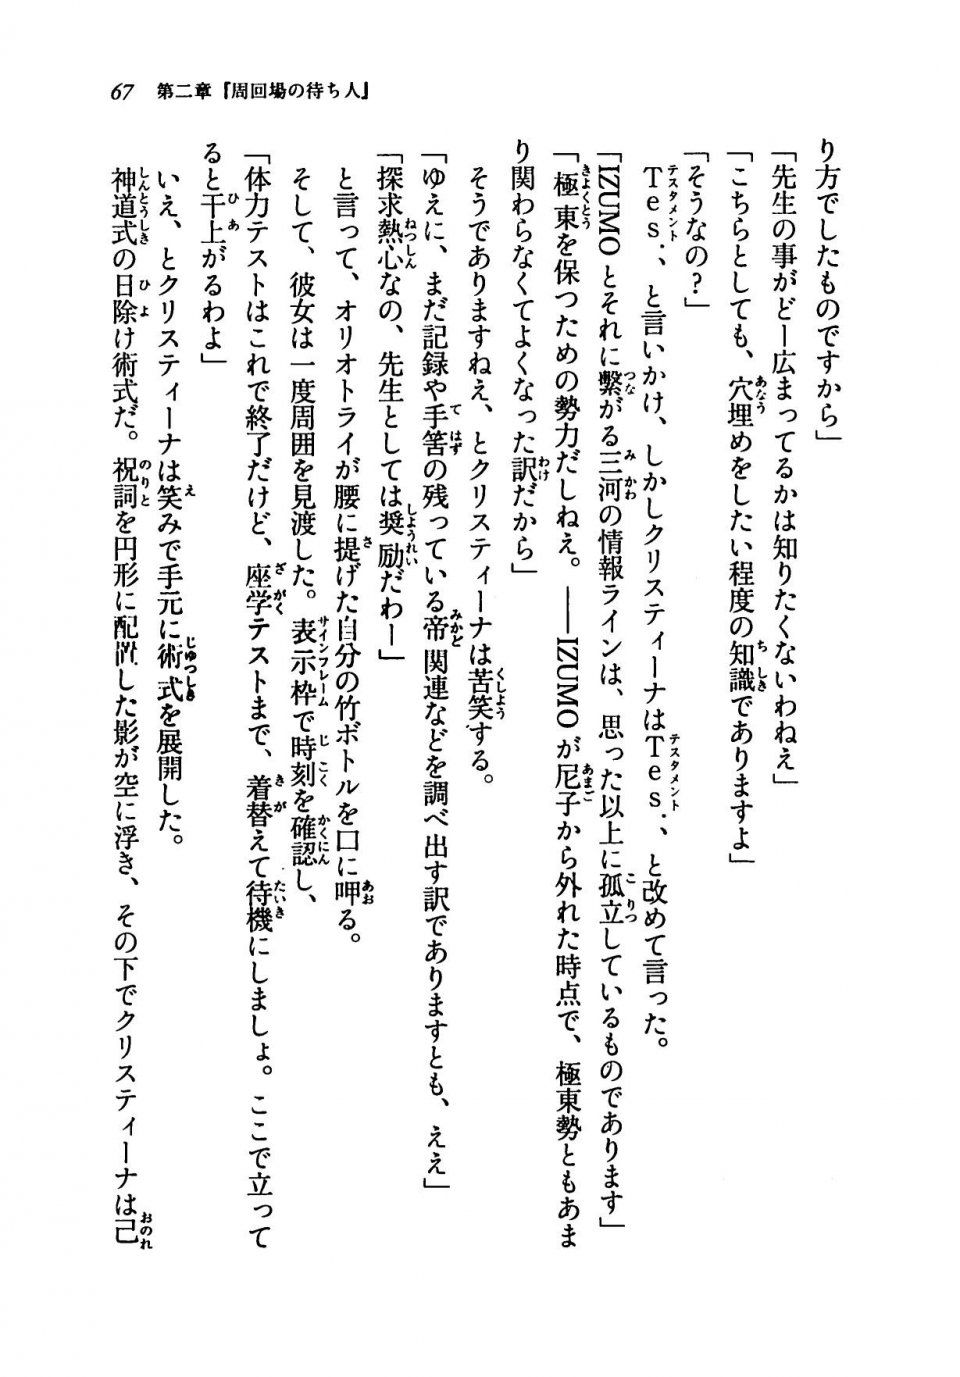 Kyoukai Senjou no Horizon LN Vol 19(8A) - Photo #67